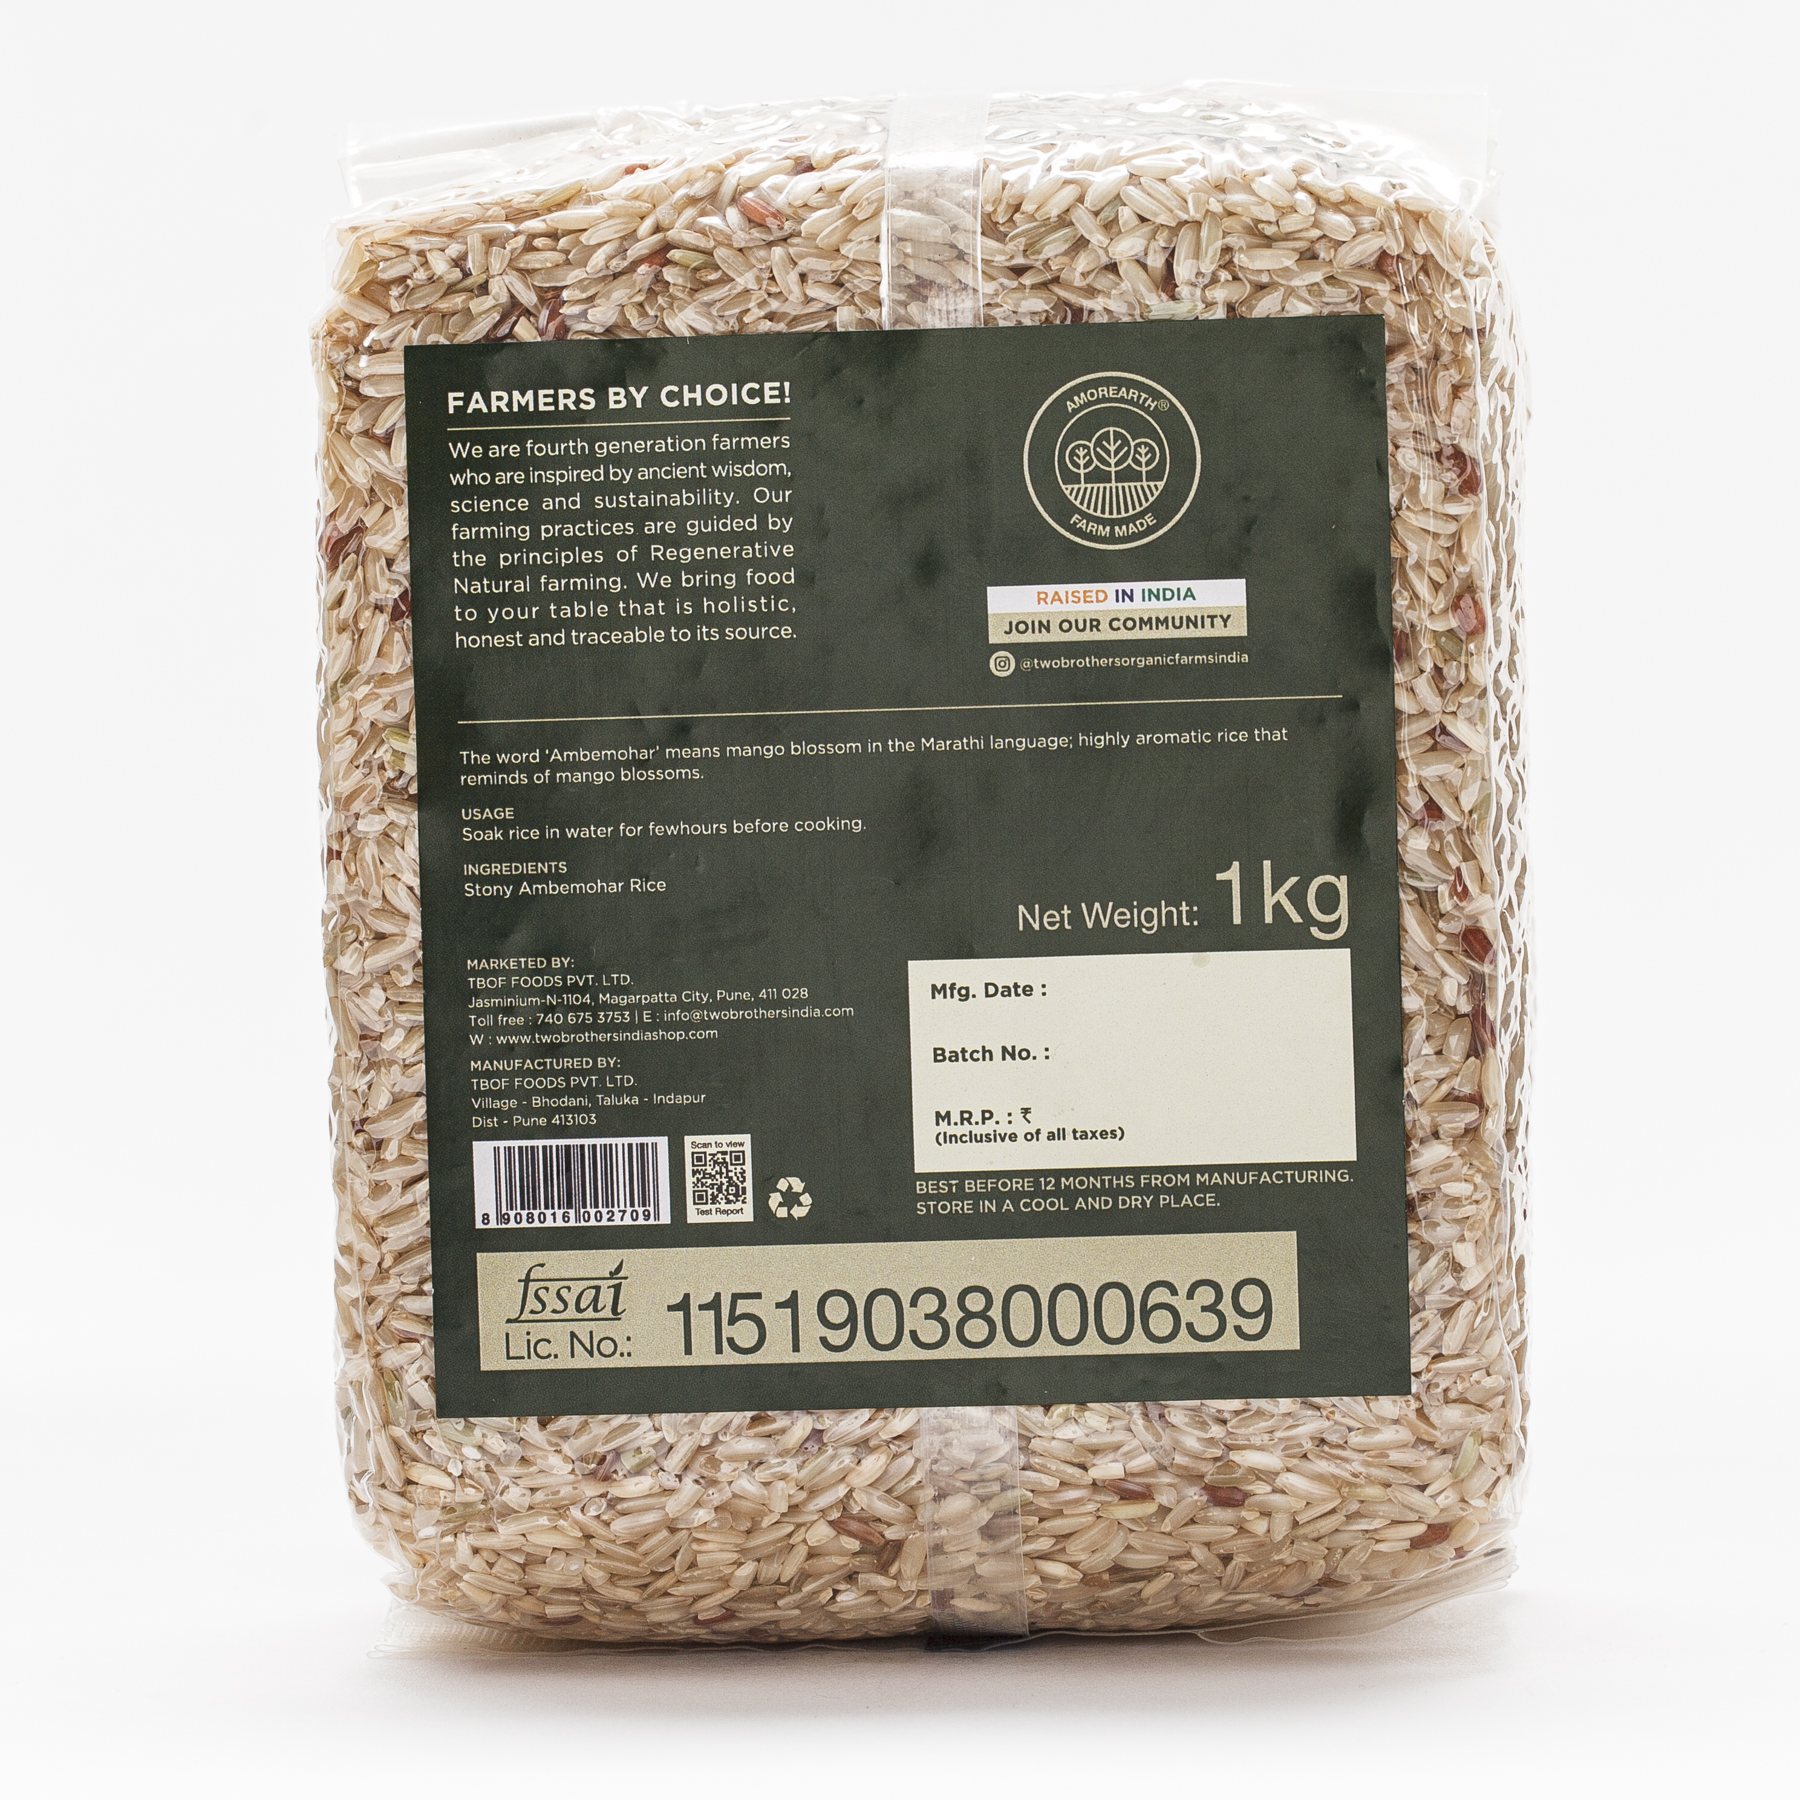 Stony Ambemohar Rice - Unpolished - 1kg